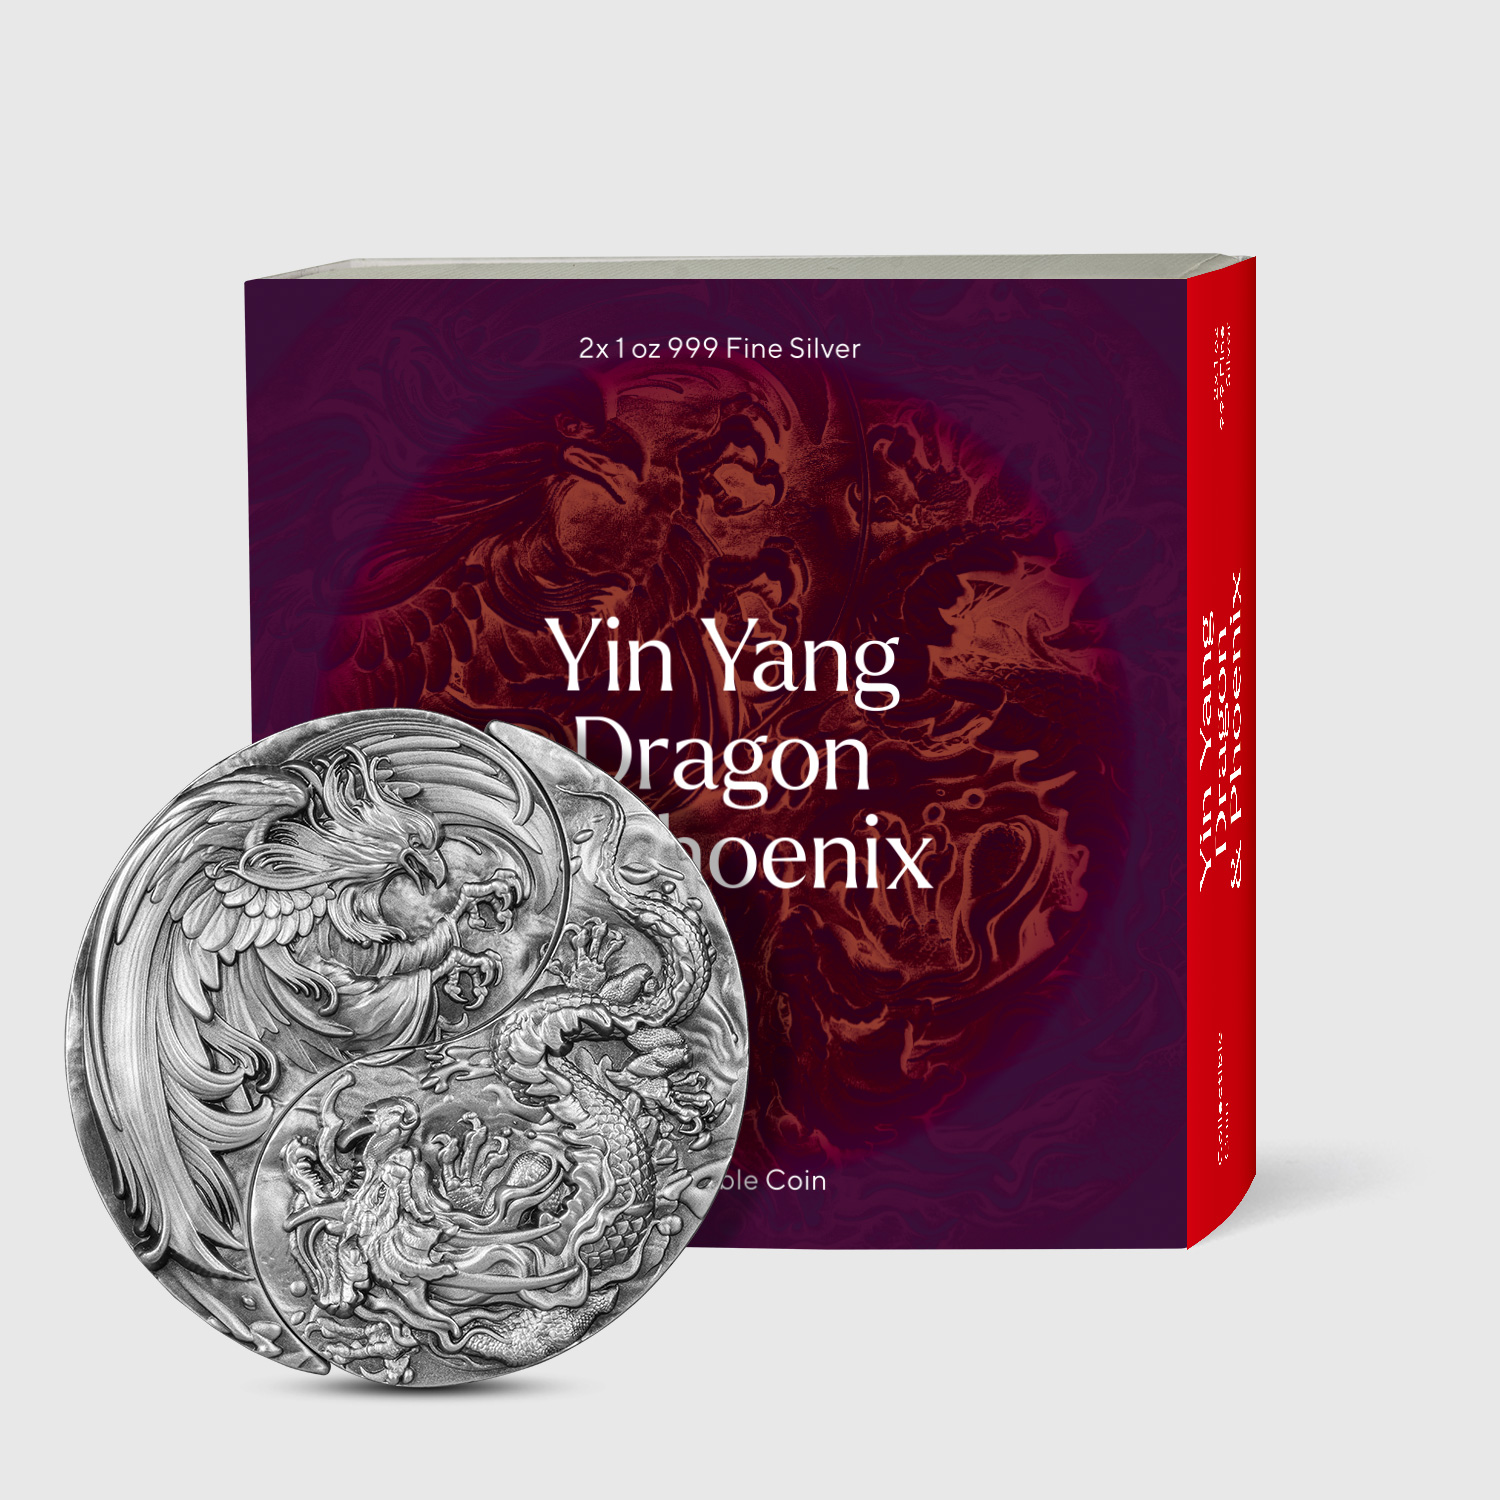 2023 Yin Yang Dragon and Phoenix Shaped 2x 1oz Silver Coin Packaging.jpg